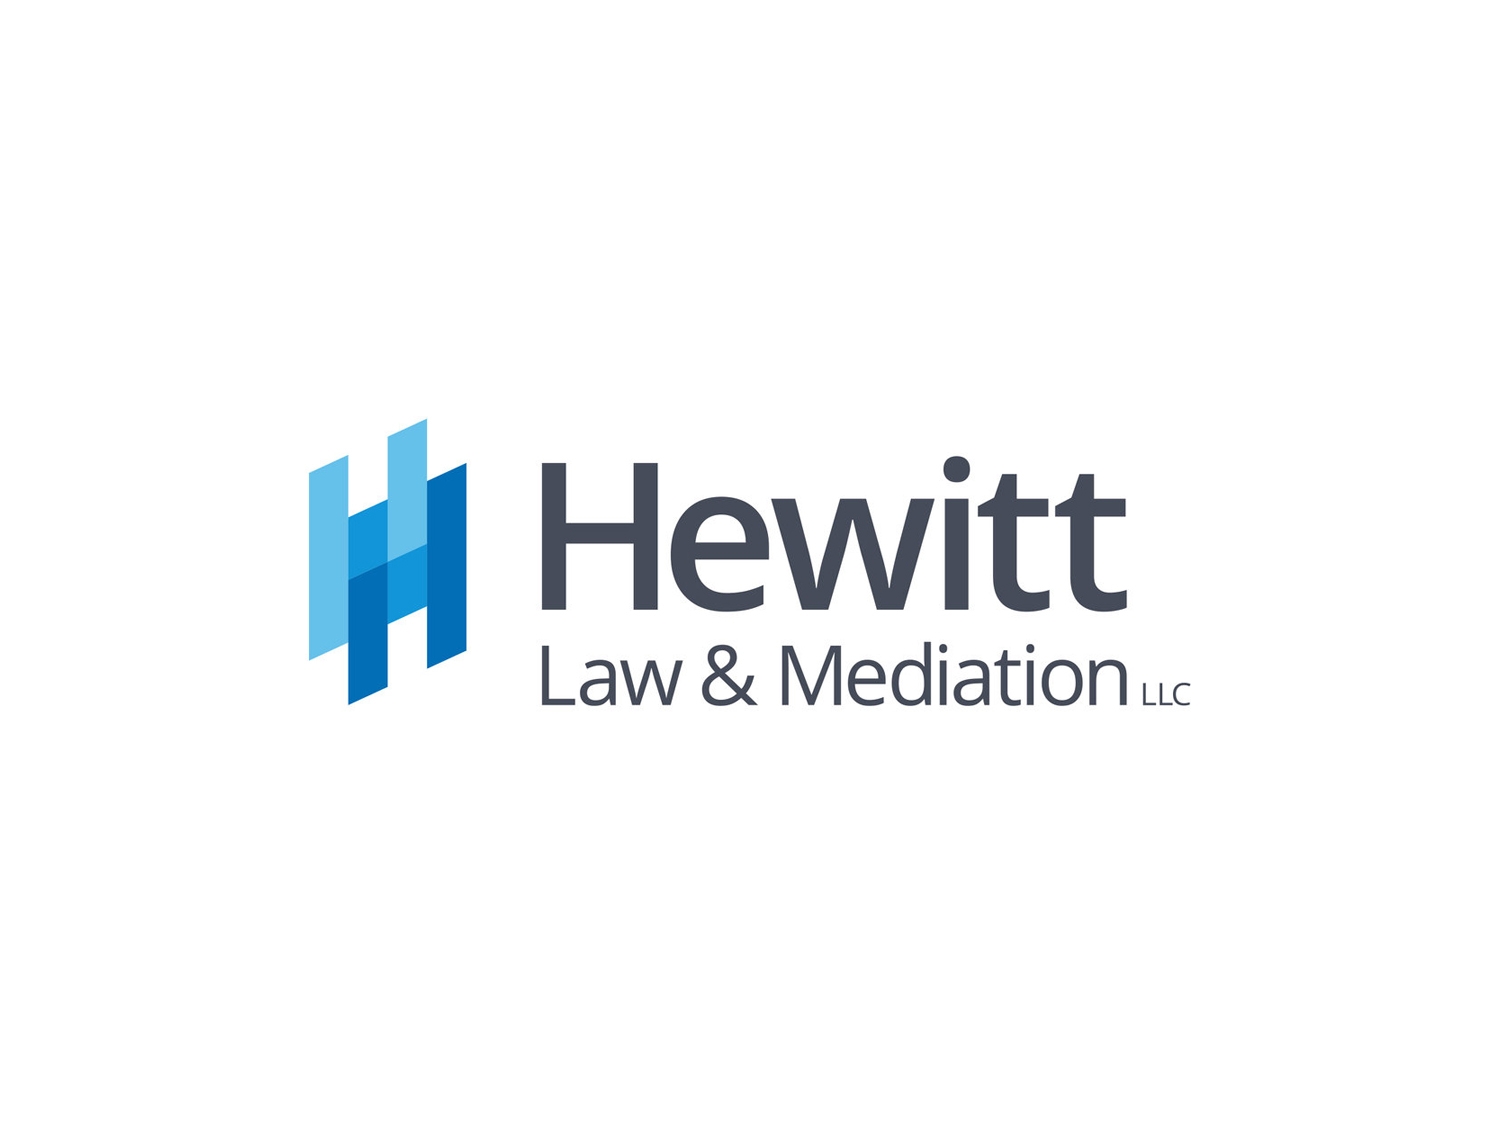 hewitt_law_mediation_logo.jpg